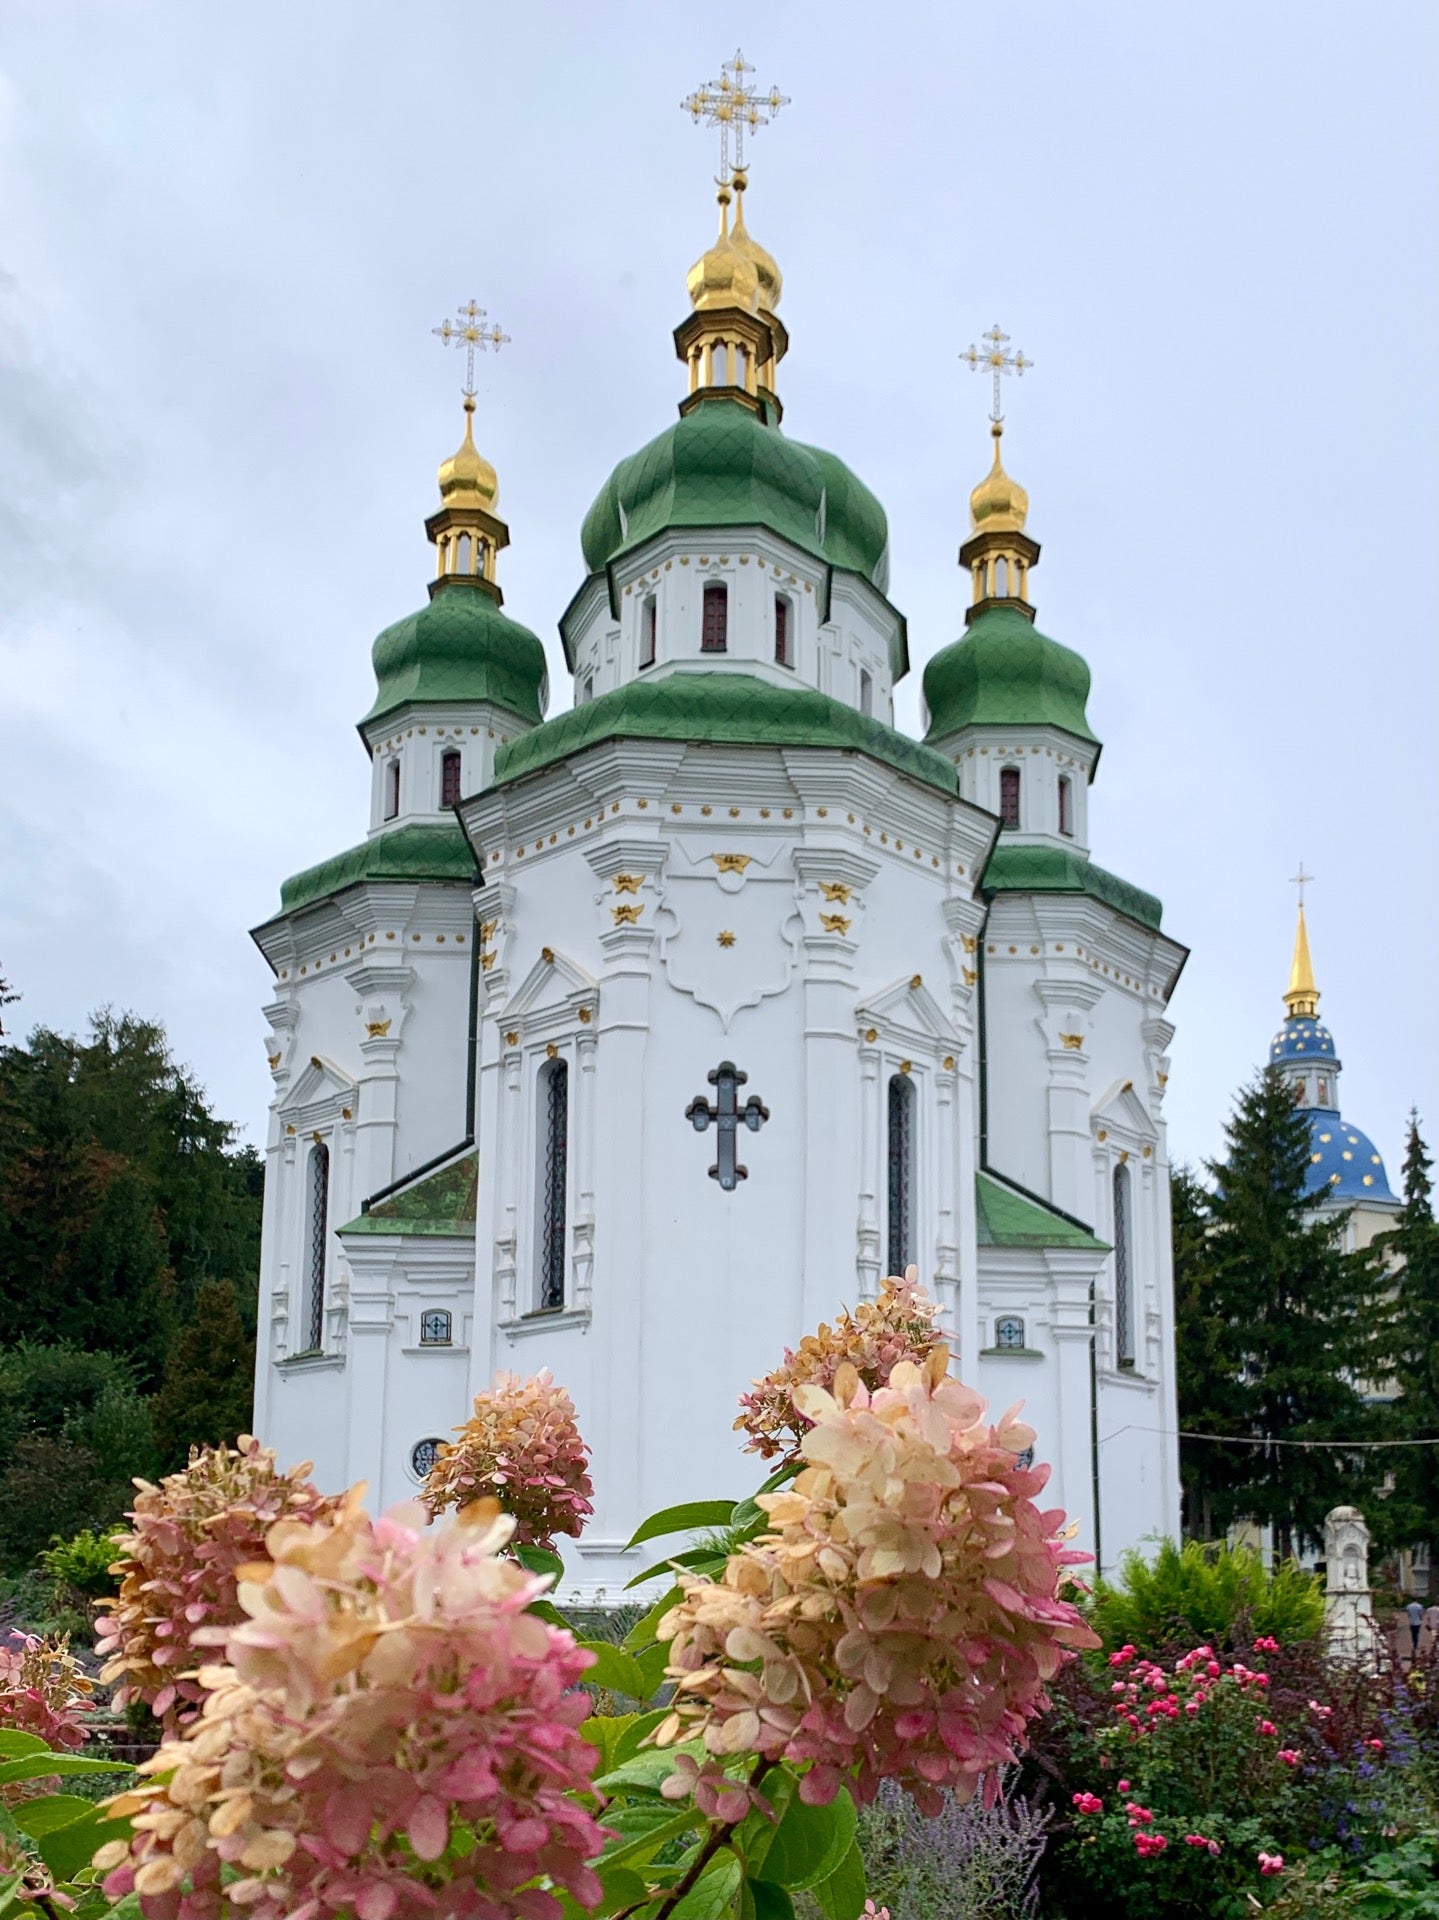 Свято-Михайлівська церква (Михайлівський собор)